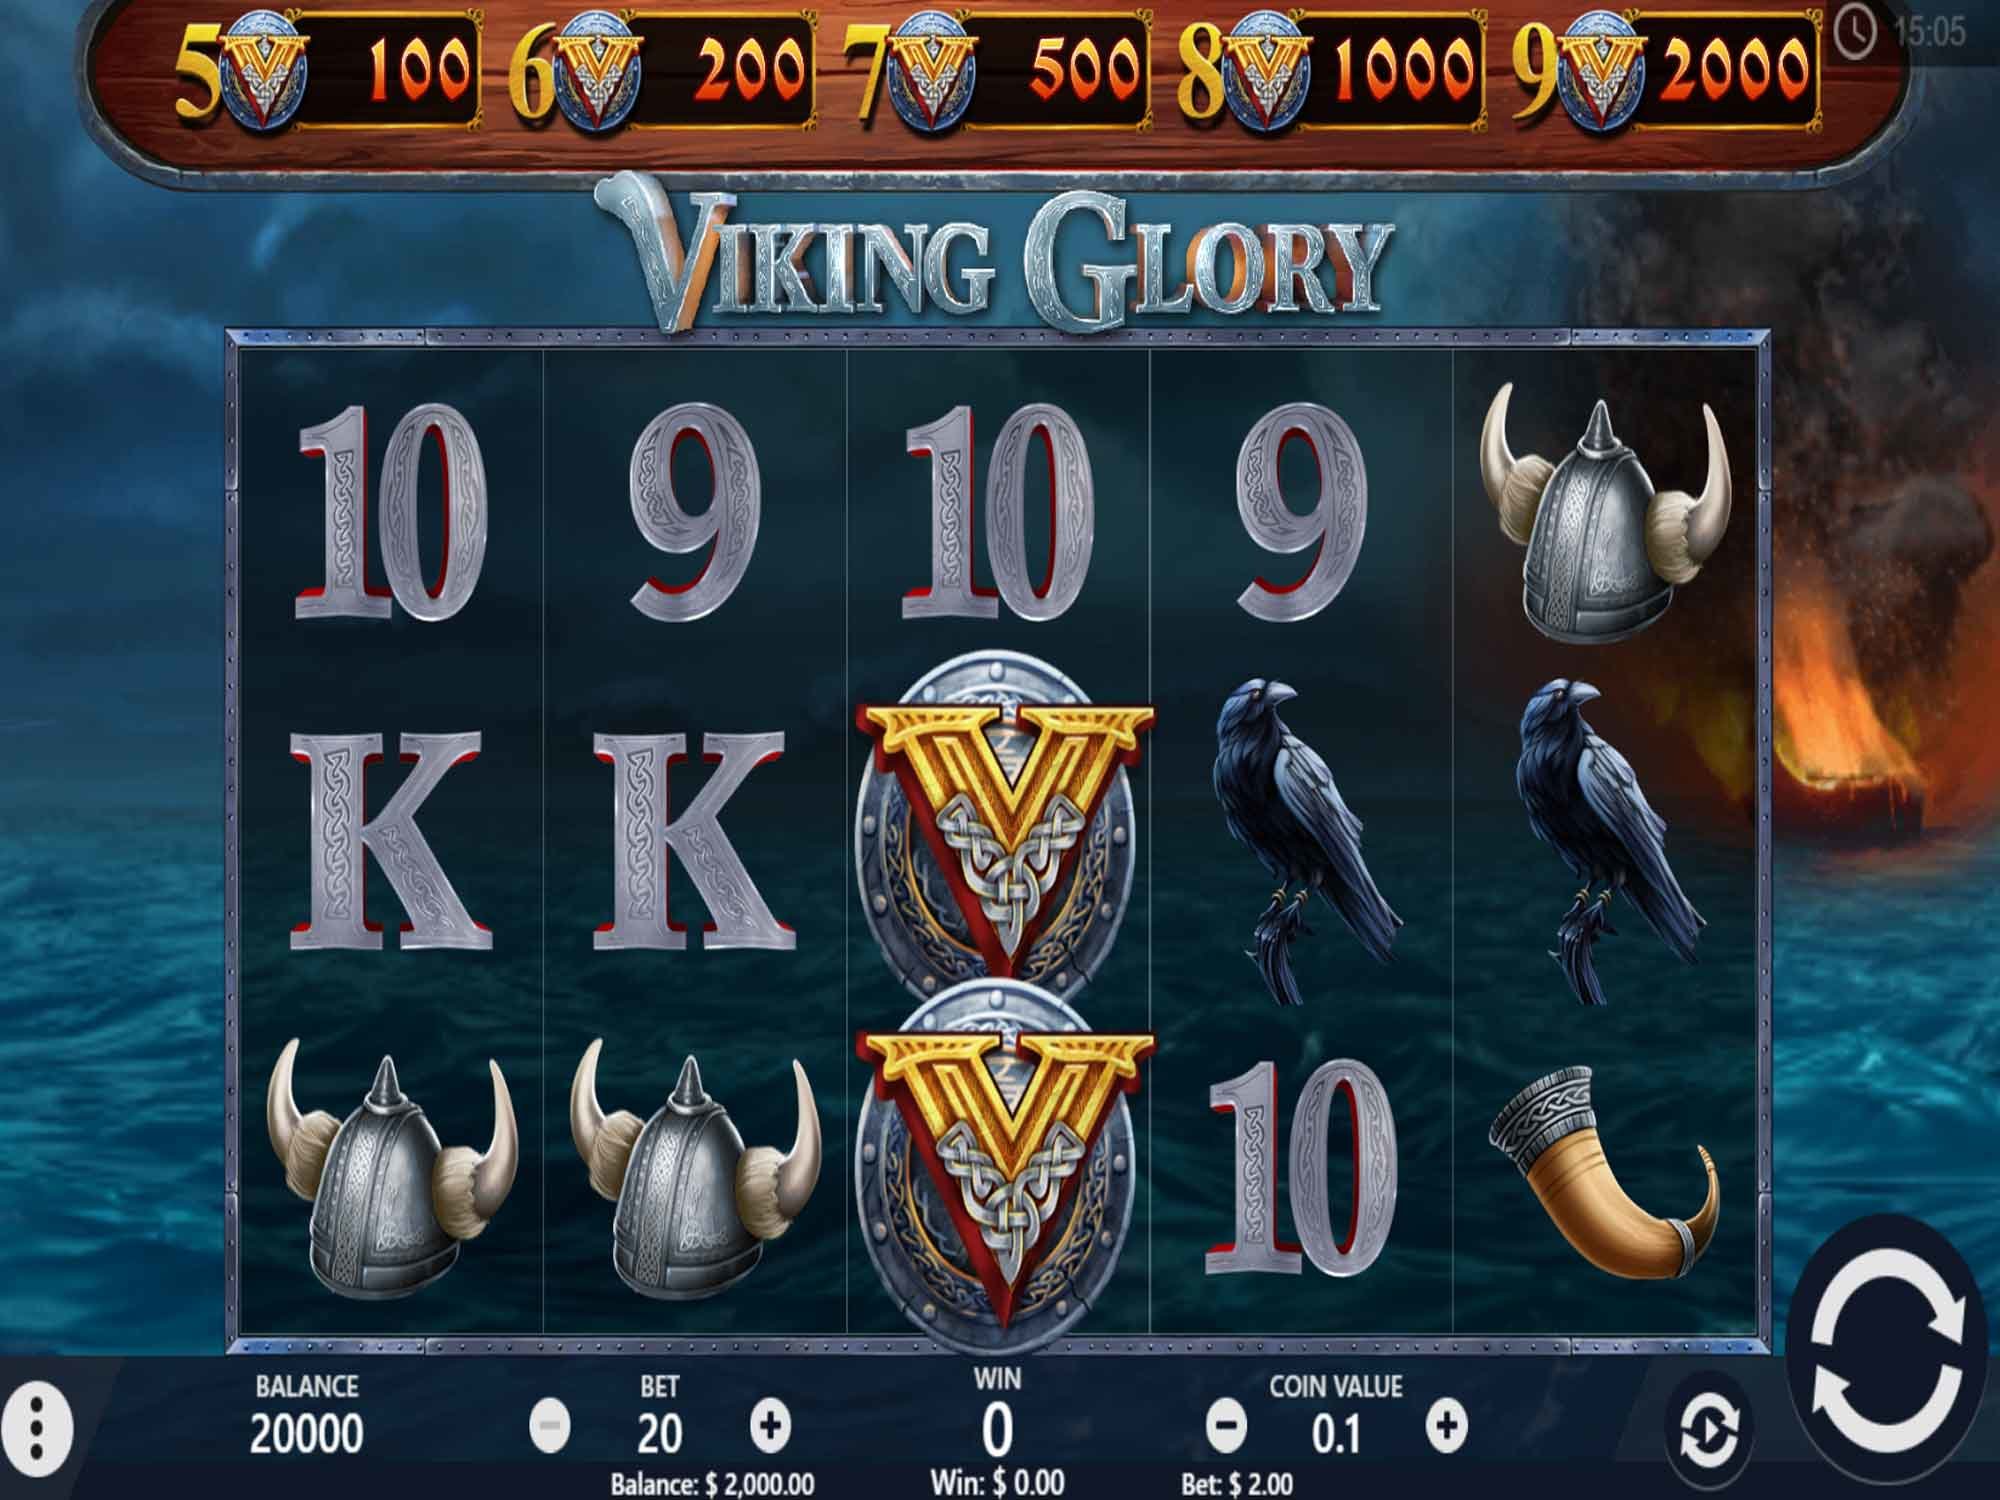 Pariplay Launches Vikings Glory Online Slots - USA Online Casino